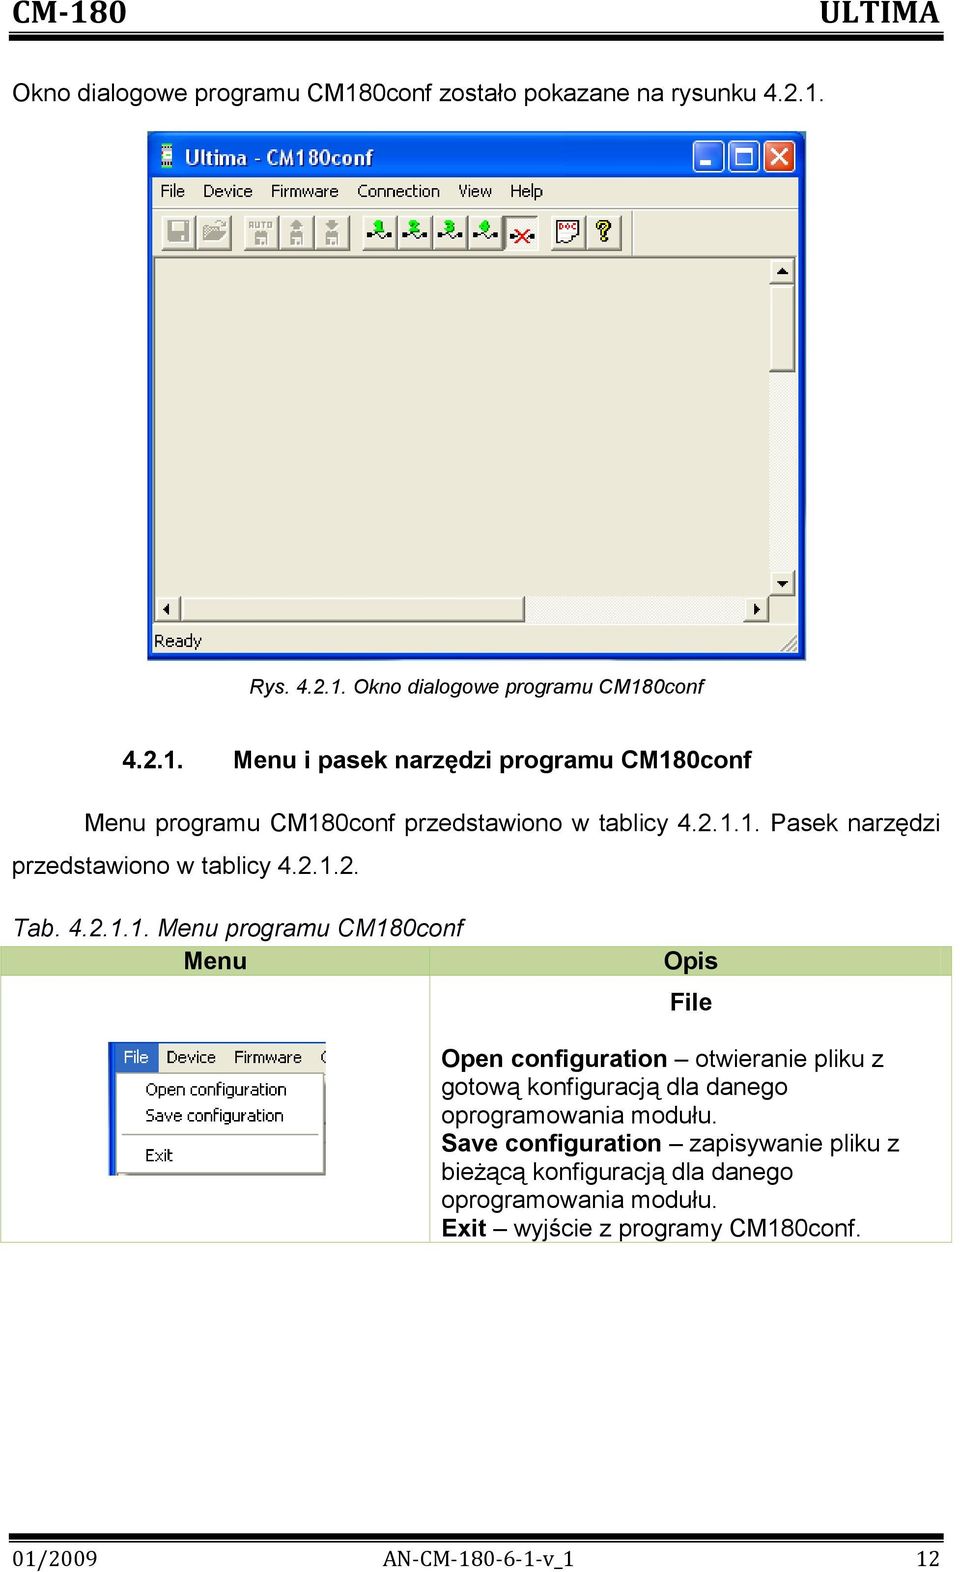 Save configuration zapisywanie pliku z bieżącą konfiguracją dla danego oprogramowania modułu. Exit wyjście z programy CM180conf.